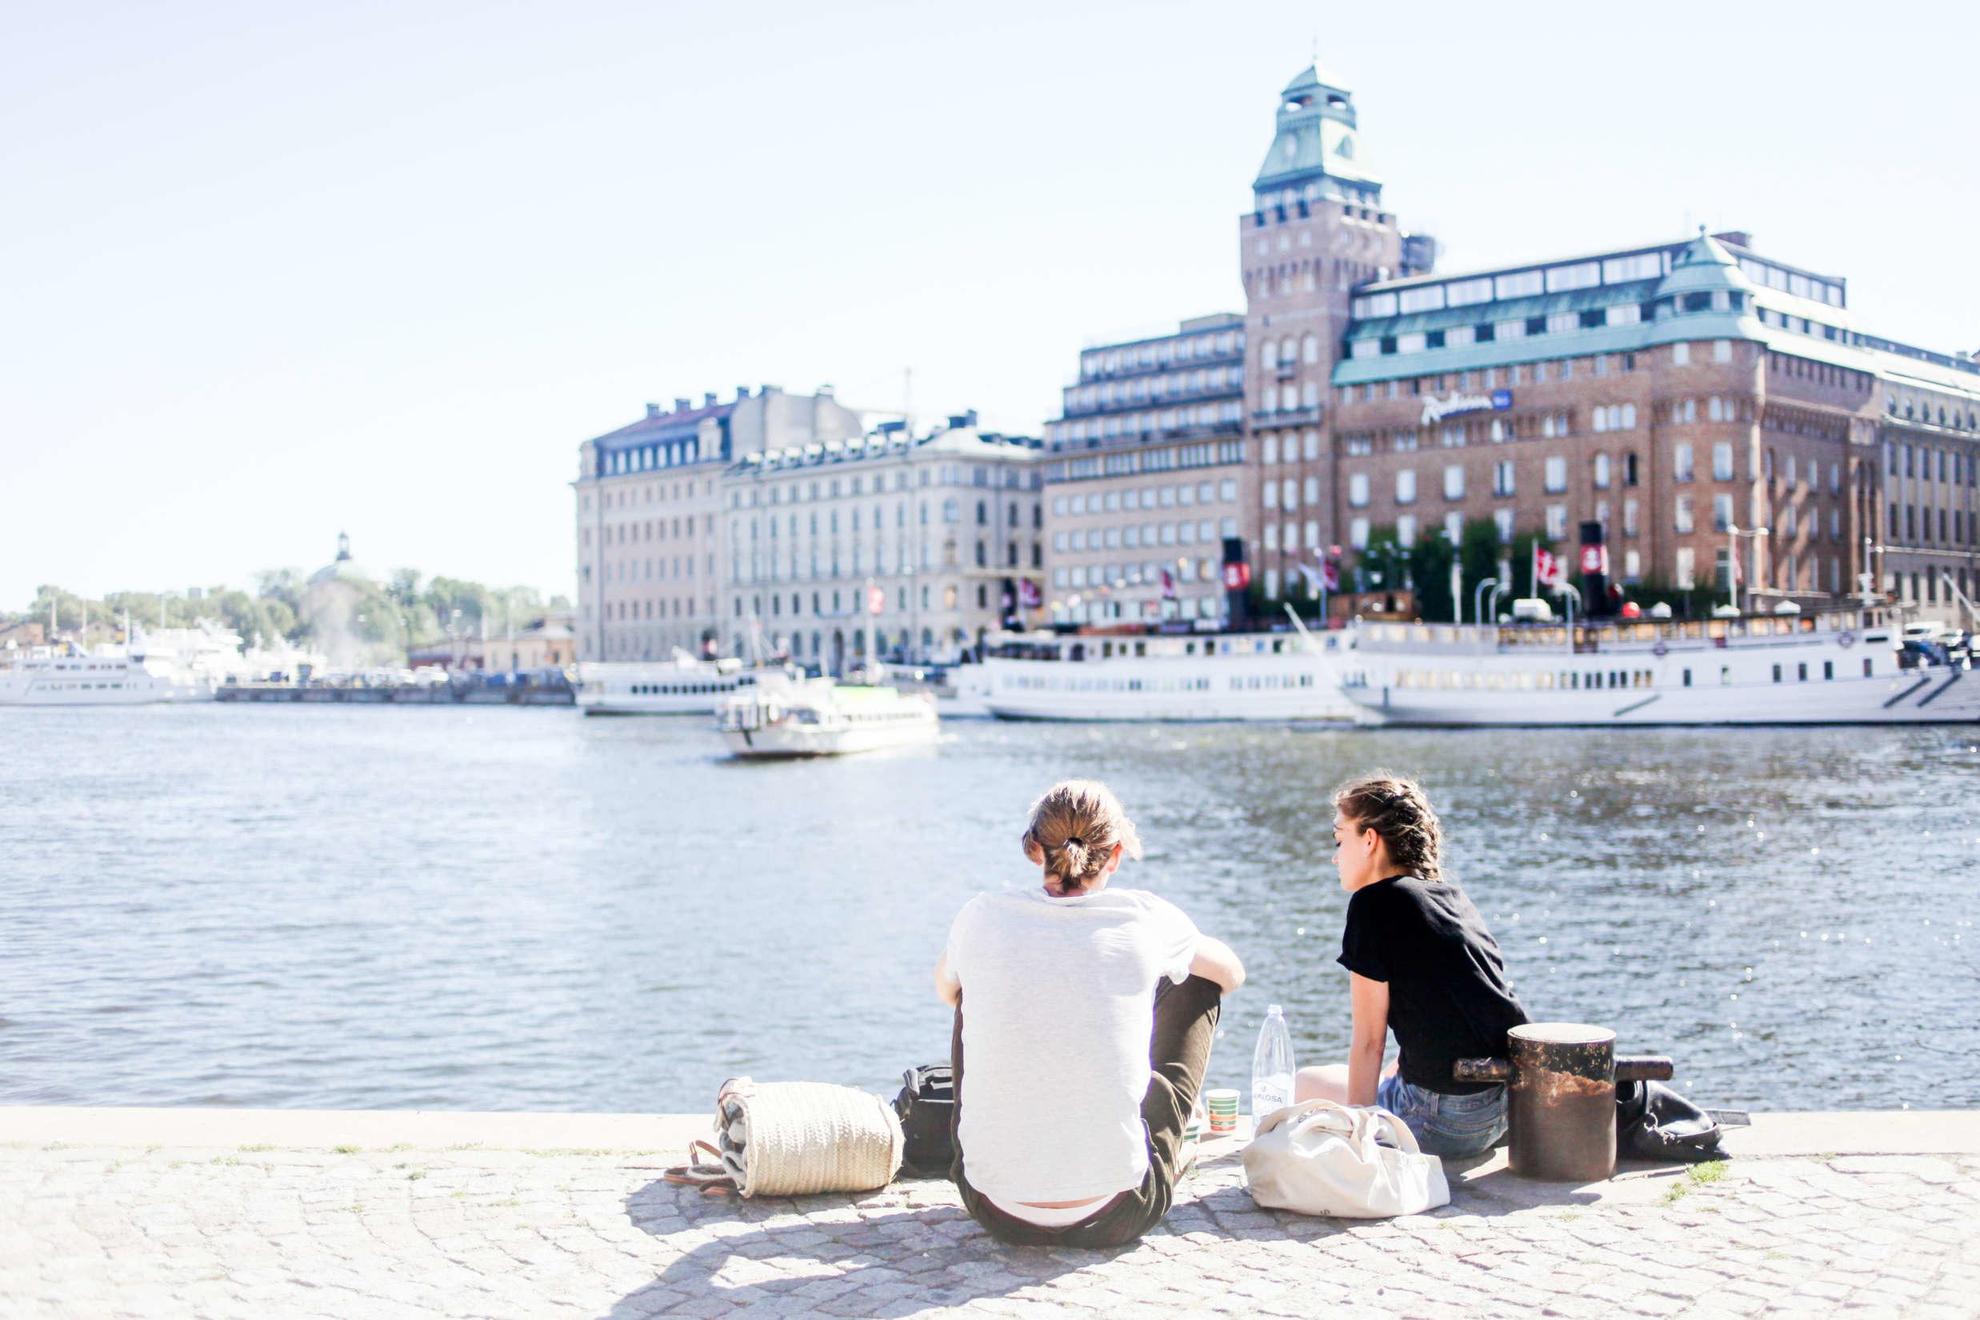 Nybrokajen in Stockholm